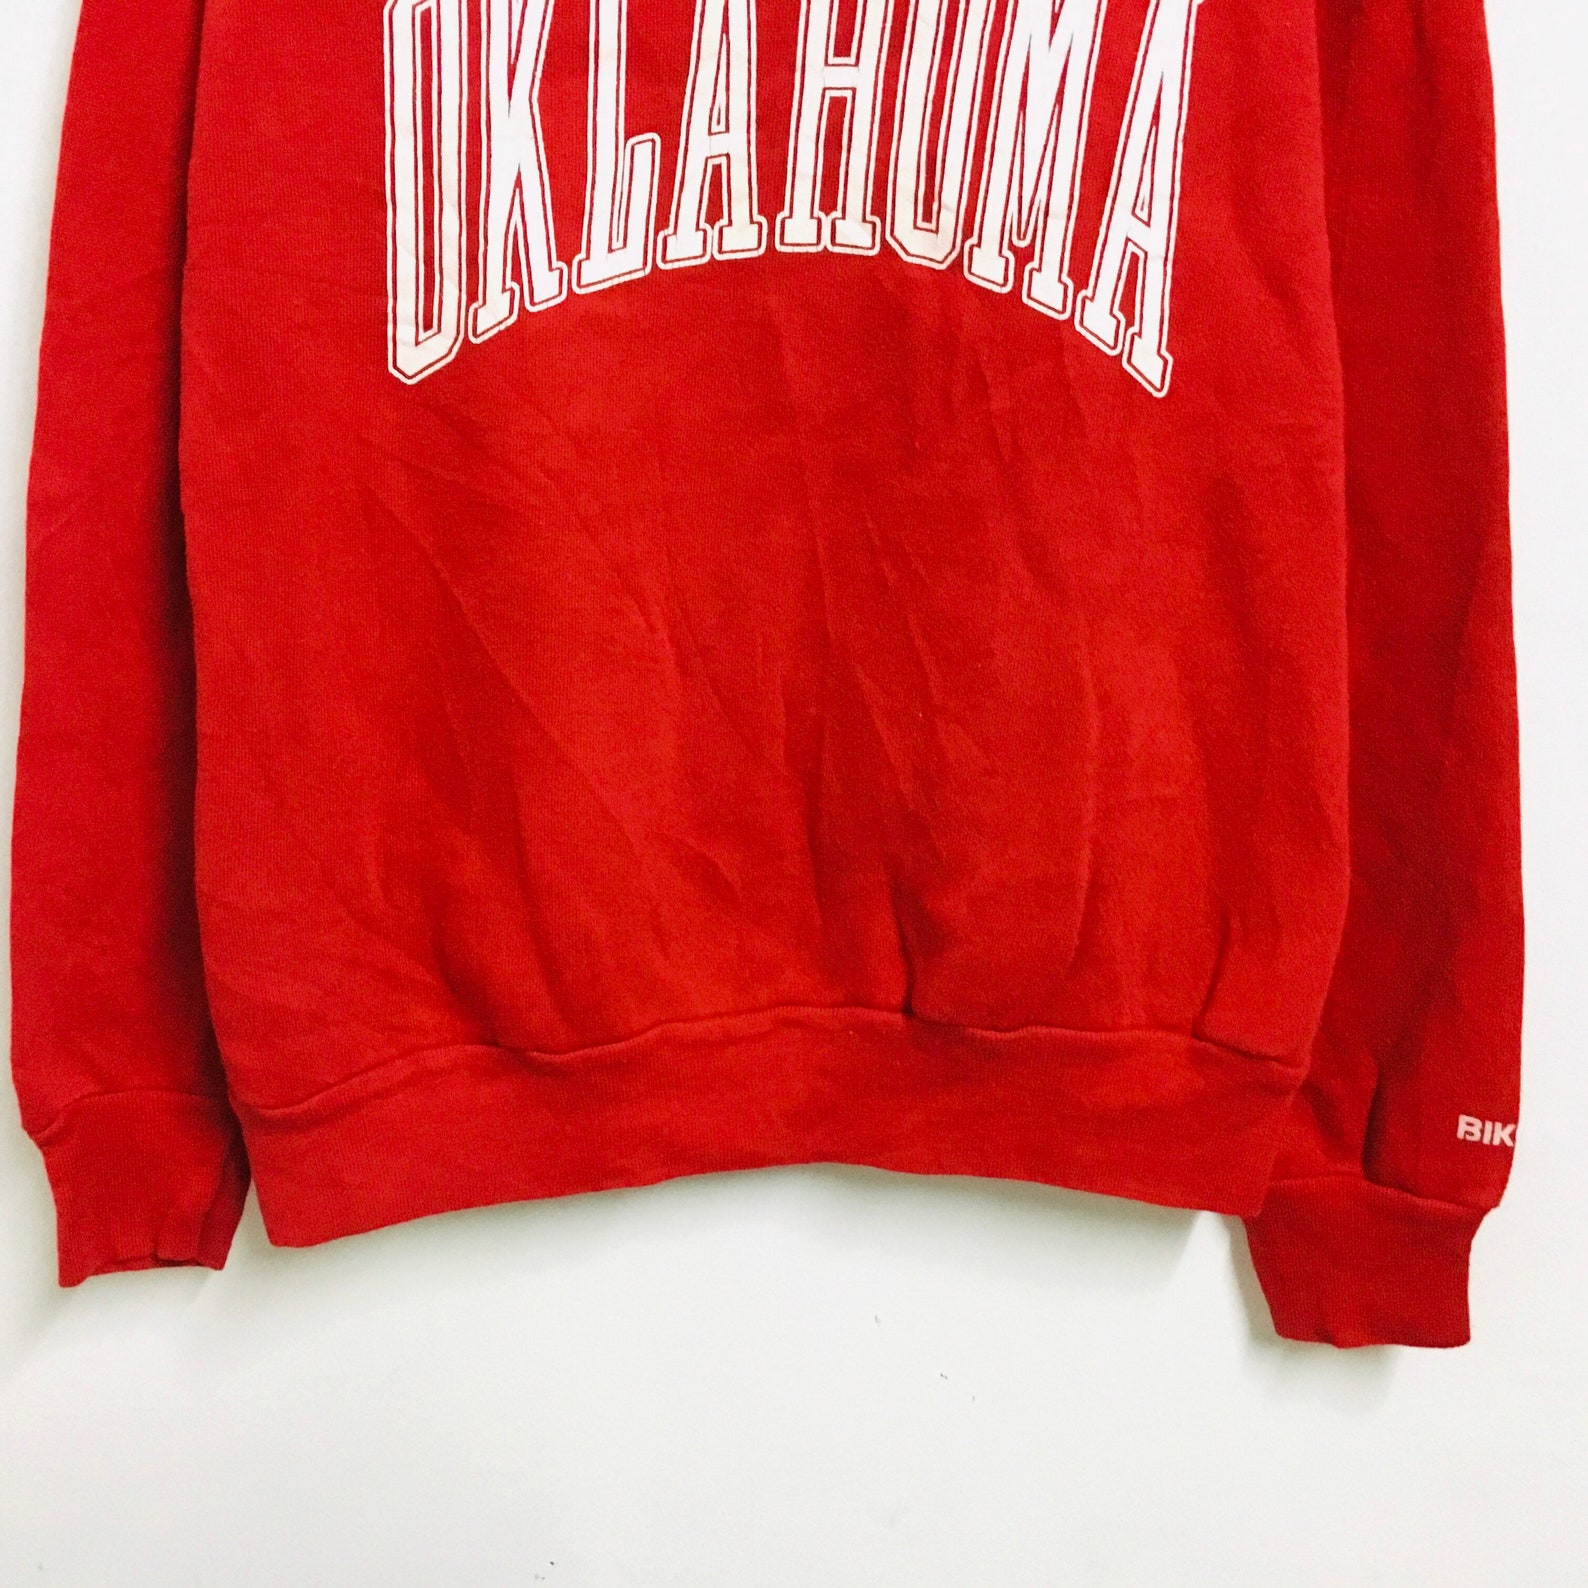 Vintage oklahoma state united states sweatshirt jumper | Etsy